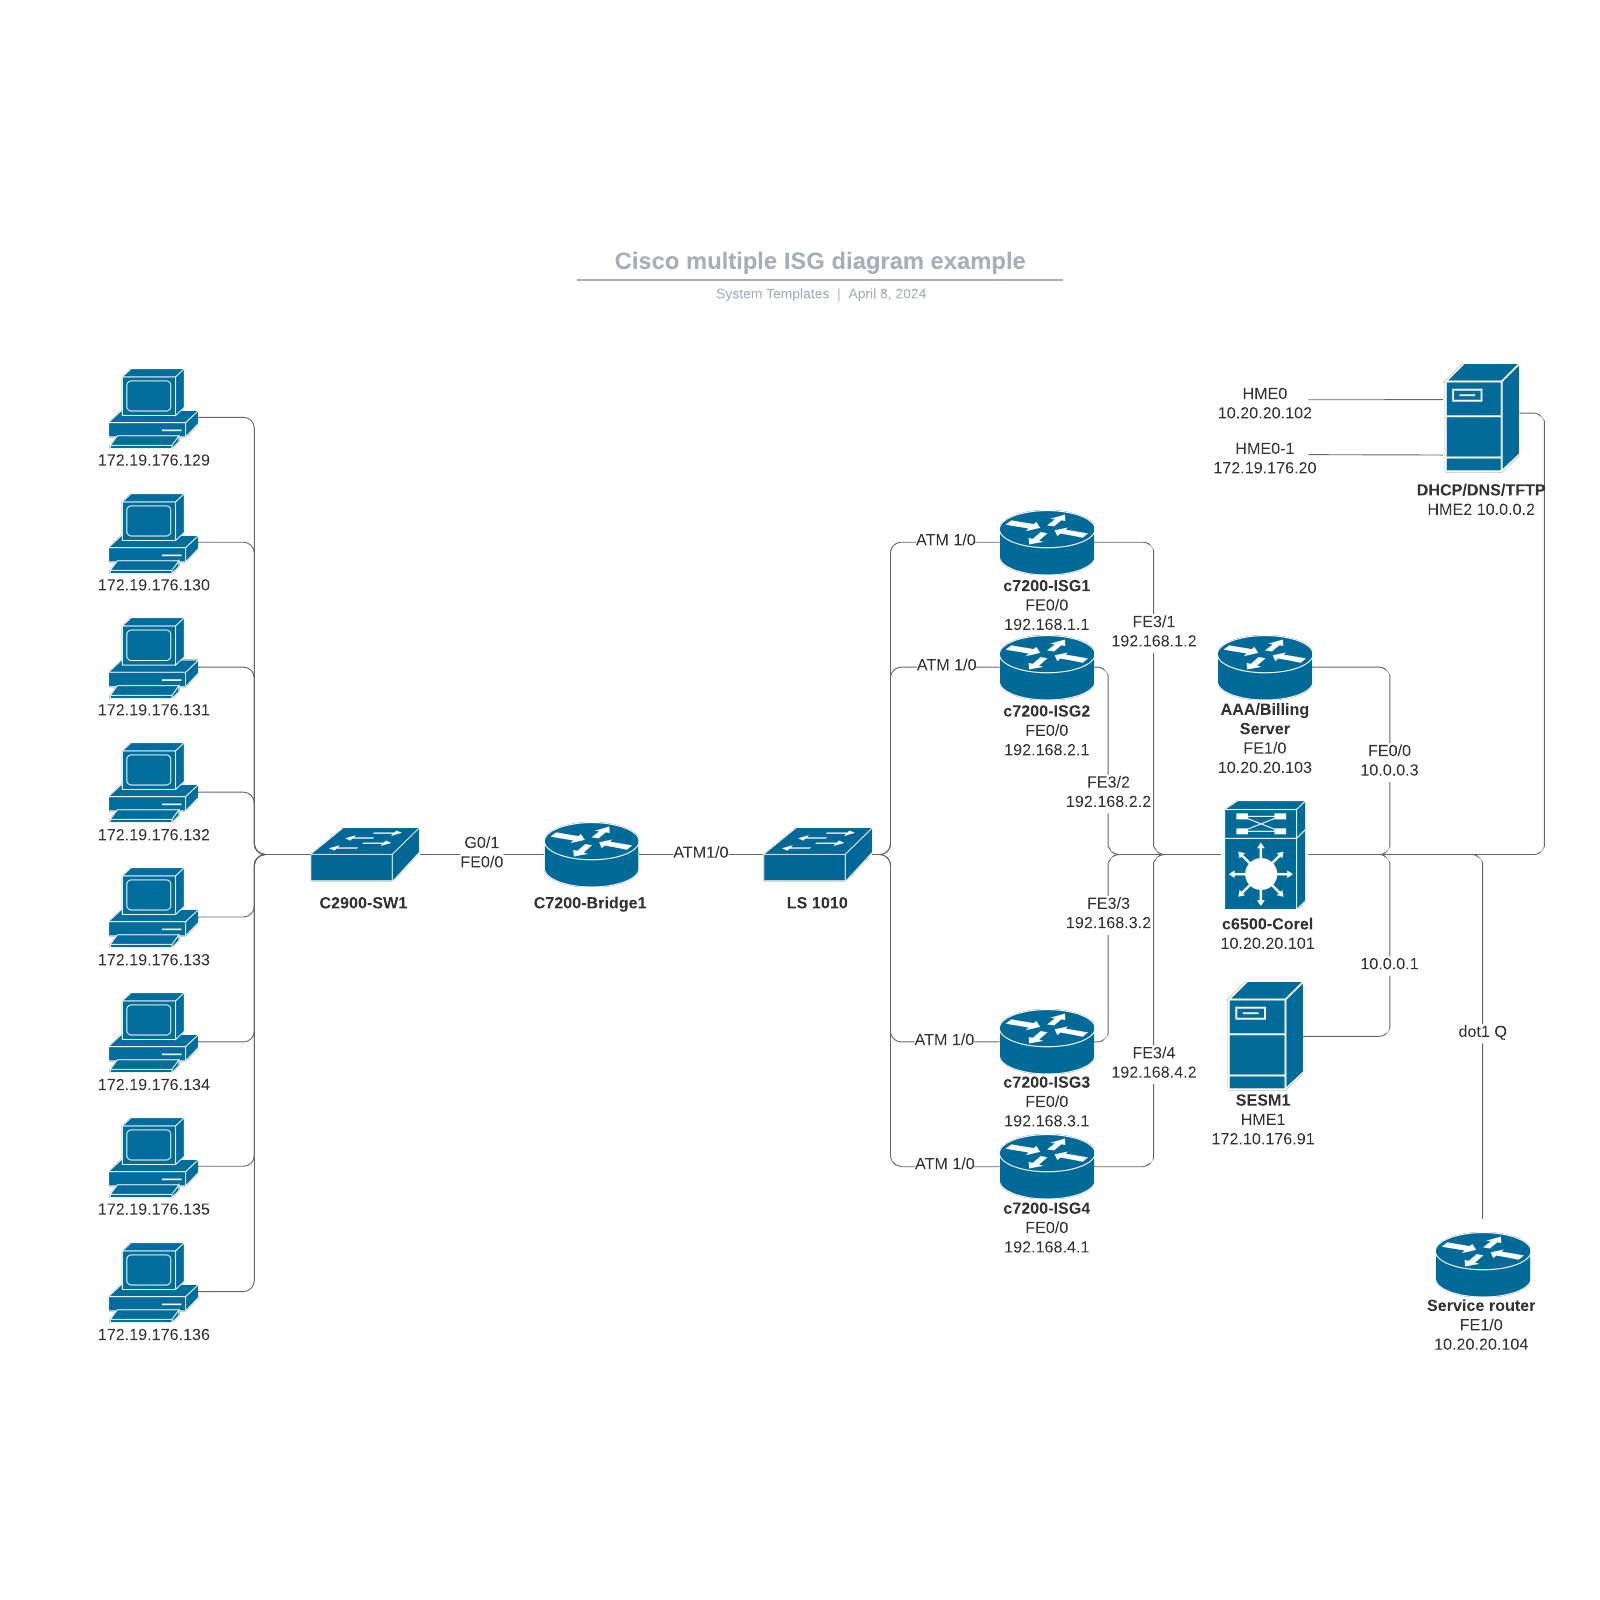 Cisco multiple ISG diagram example example